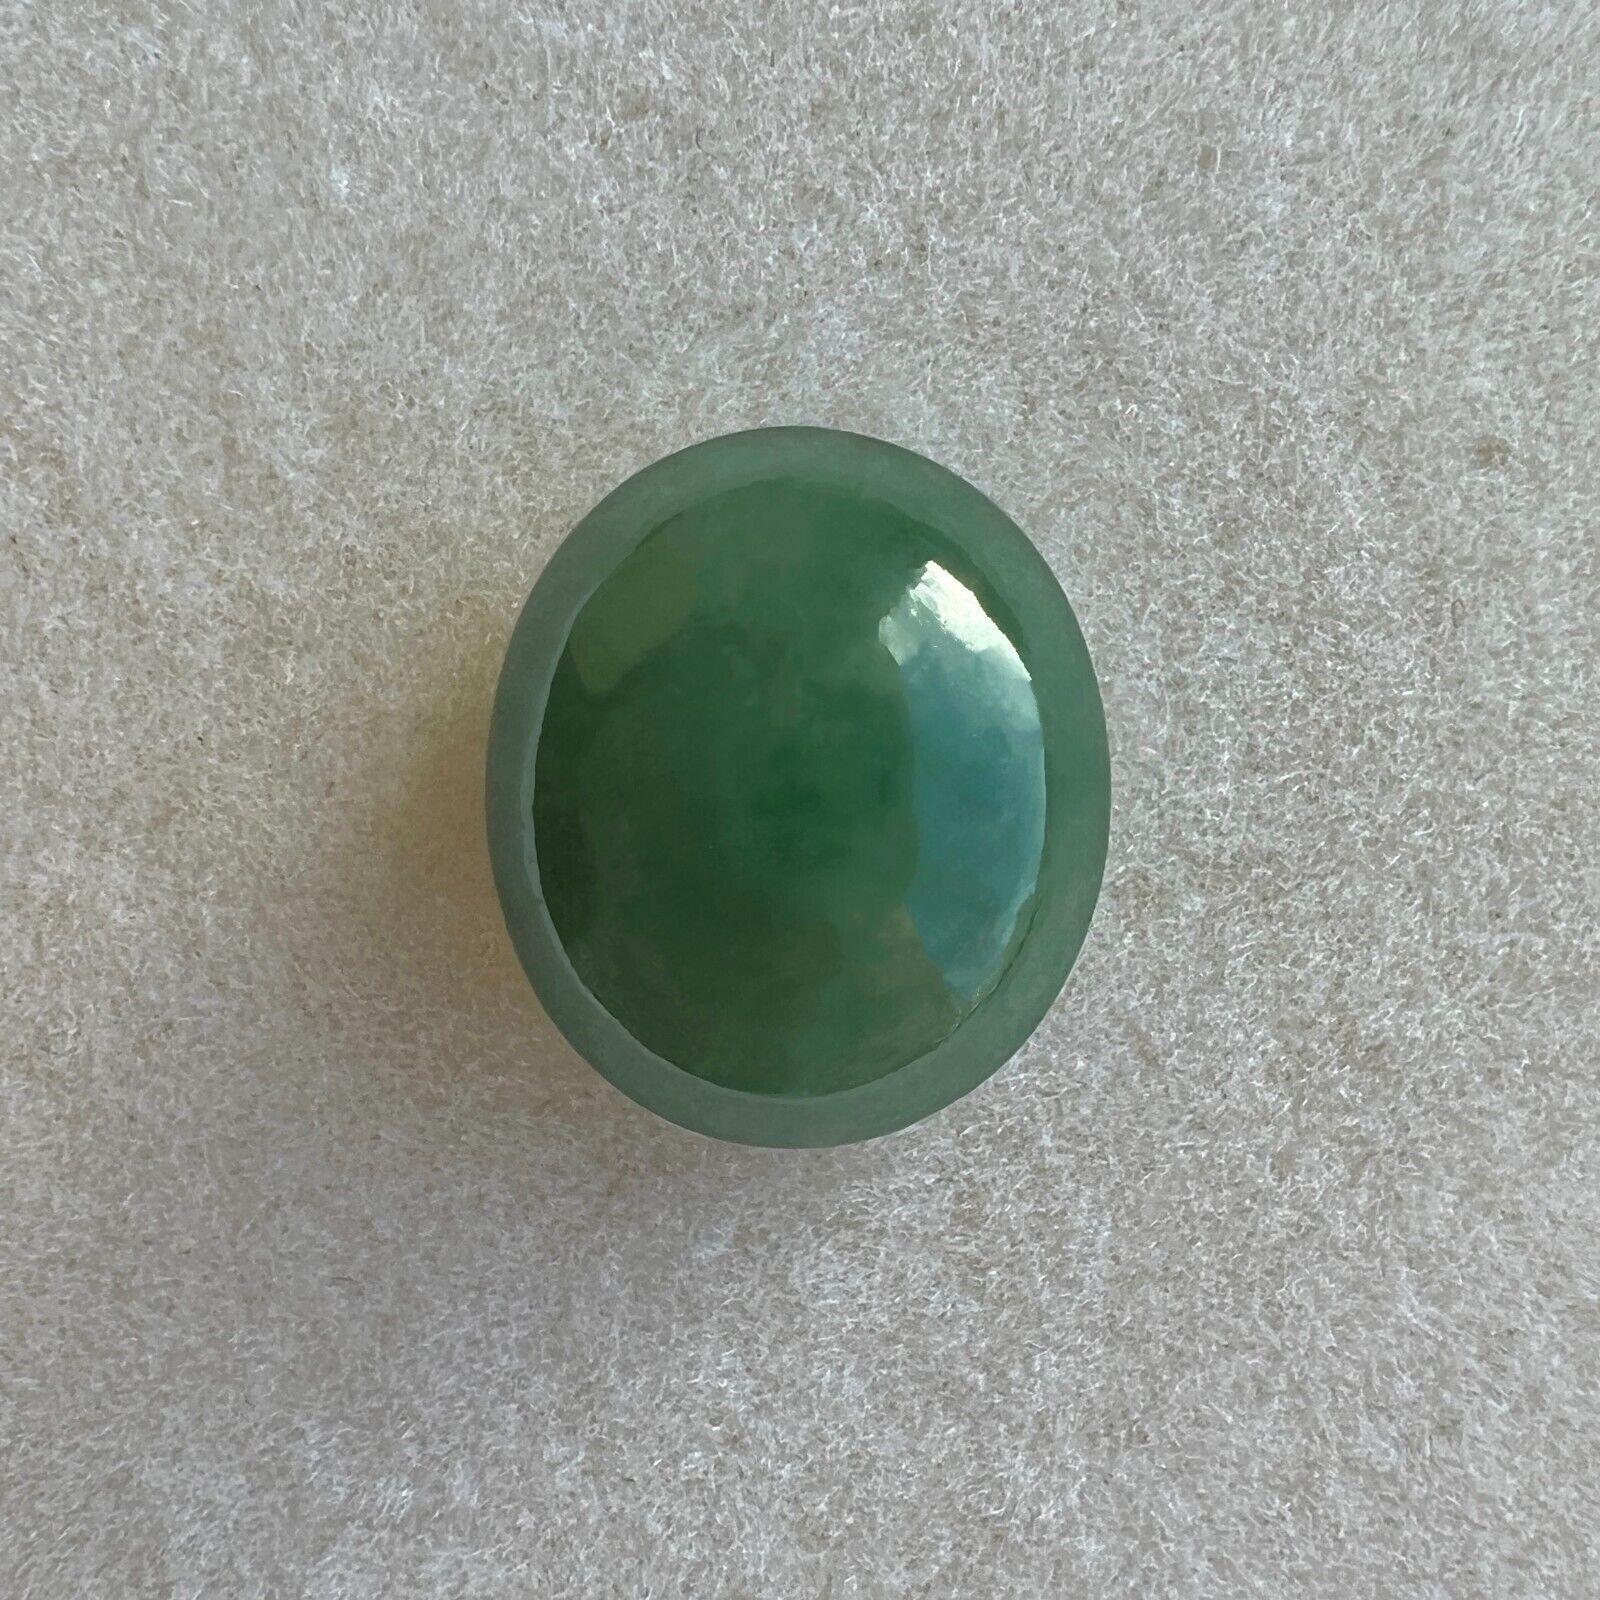 IGI Certified 6.67Ct Natural Green Jadeite Jade 'A' Grade Oval Cabochon Gem

Pierre précieuse en jadéite verte non traitée de grade A, certifiée par l'IGI.
Grande pierre de 6,67 carats avec une excellente coupe ovale en cabochon et une couleur verte